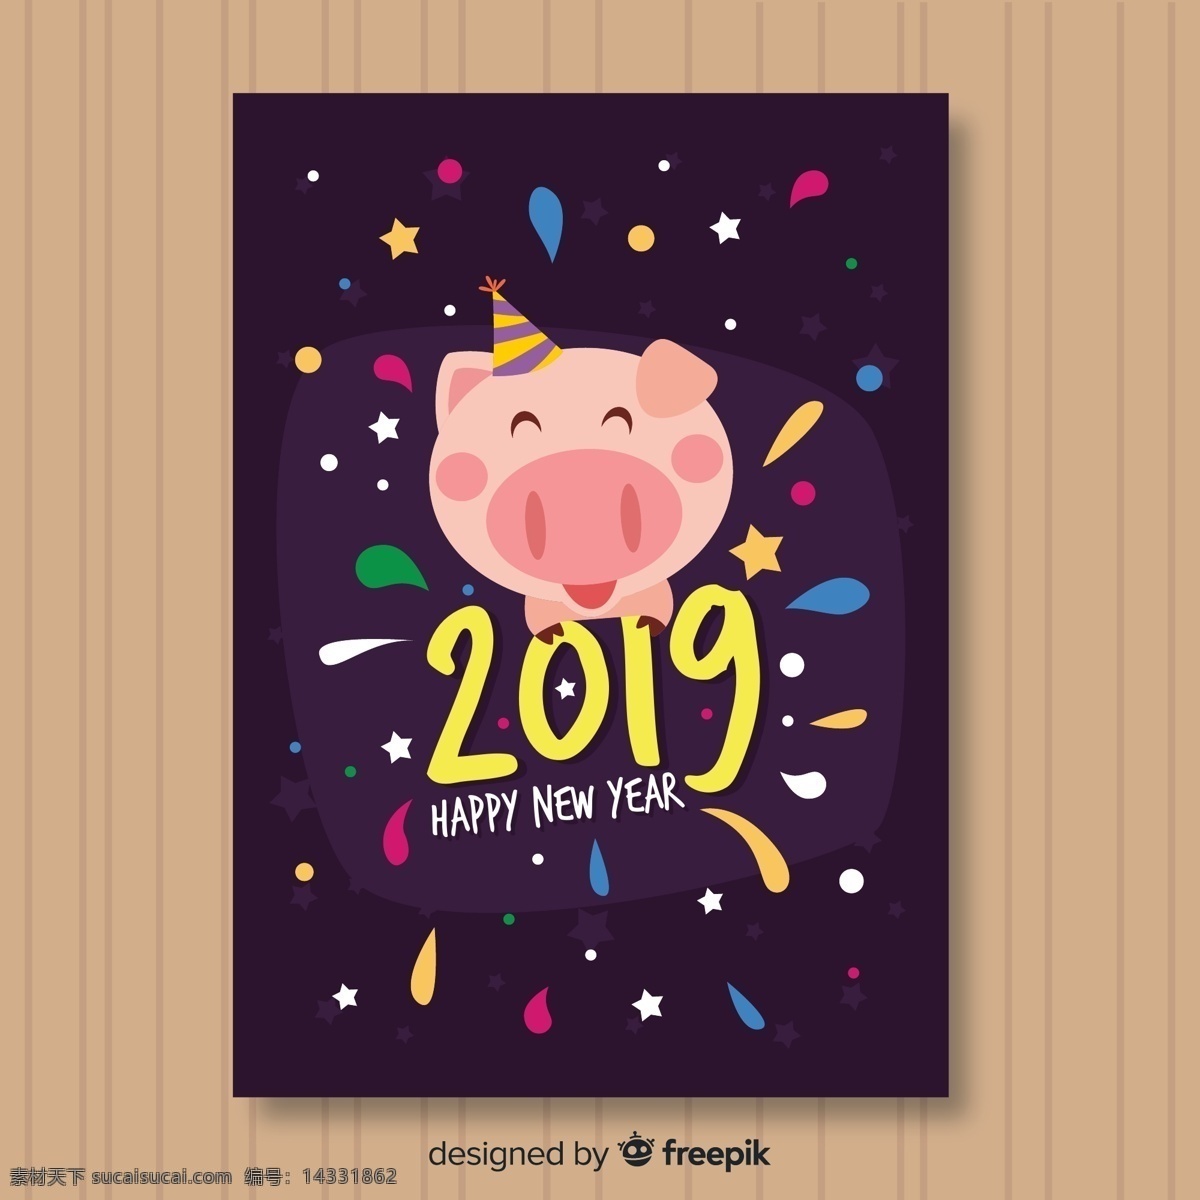 2019 年 可爱 小 猪 新年贺卡 矢量 木板 happy new year 2019年 小猪 新年 贺卡 名片卡片